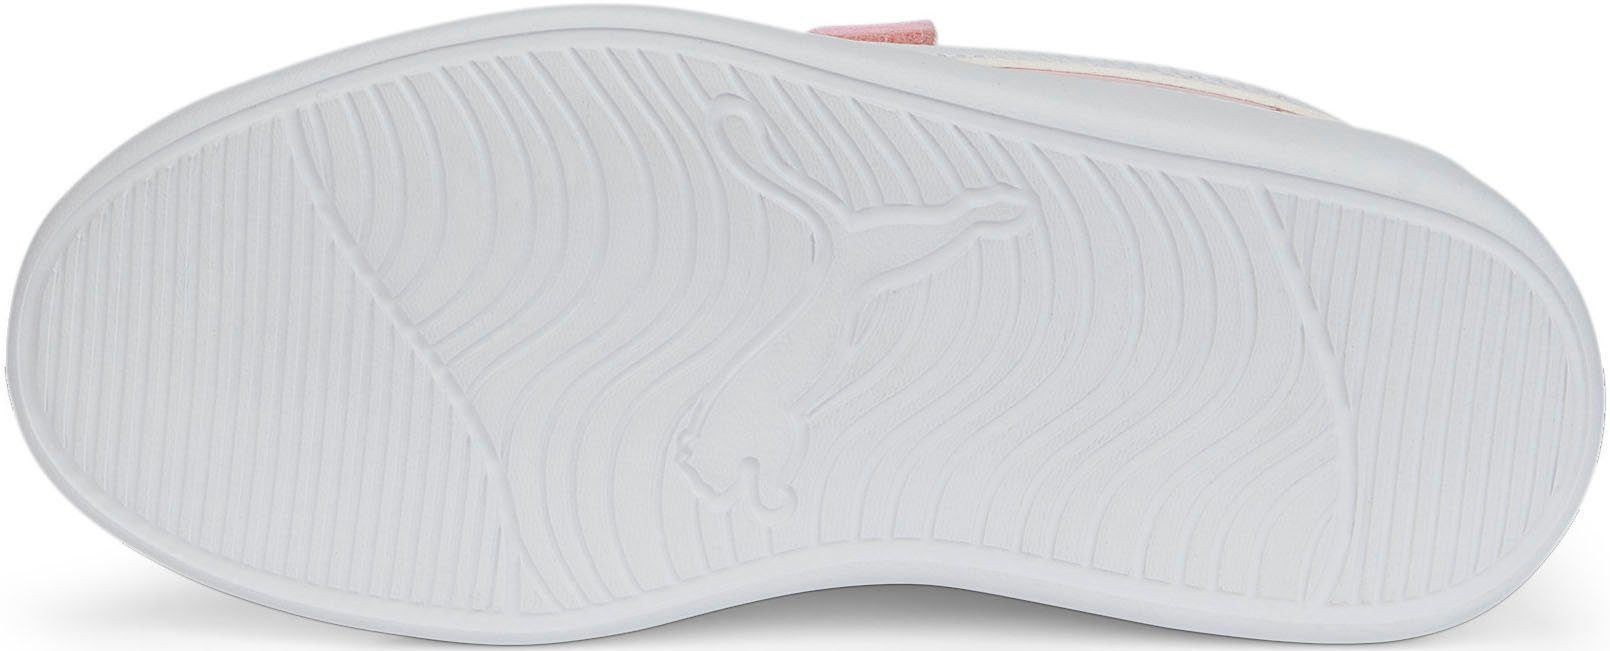 PUMA Courtflex v2 V PS pink Sneaker für mit Klettverschluss Kinder